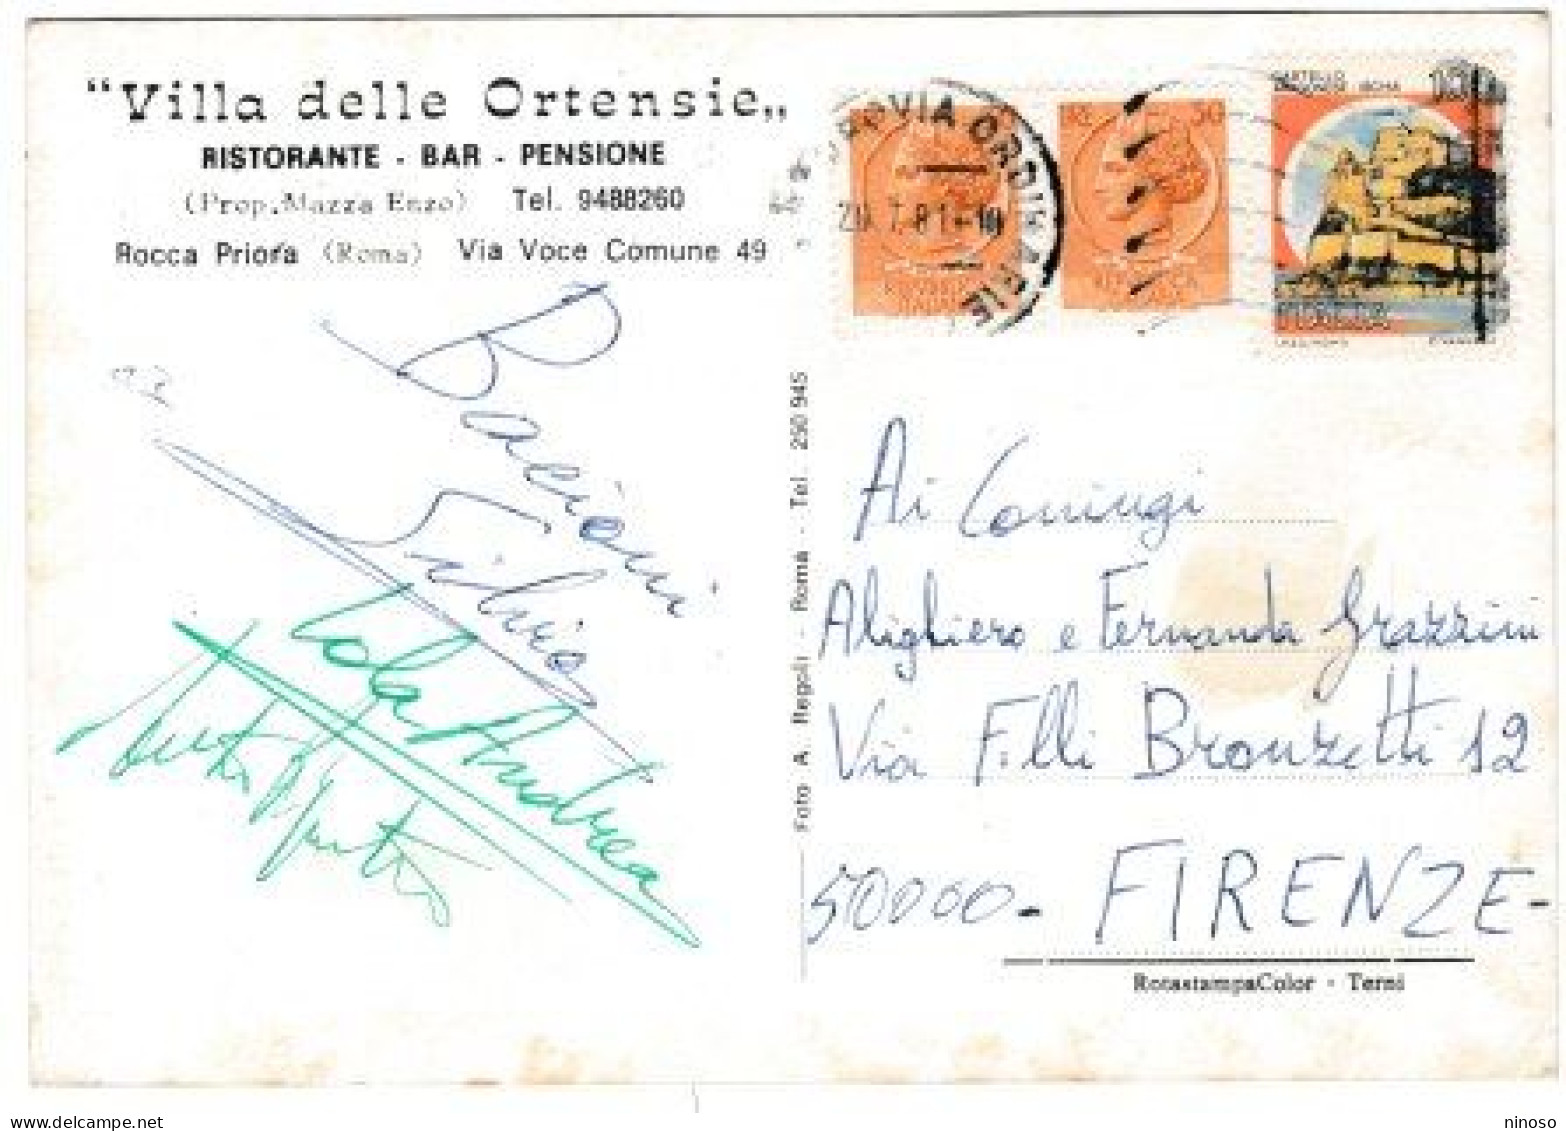 ITALY ITALIA ITALIEN CARTOLINA  VIAGGIATA NEL1981 - ALBERGO RIST.TE BAR VILLA DELLE ORTENSIE - ROCCA PRIORE  ROMA - Cafes, Hotels & Restaurants